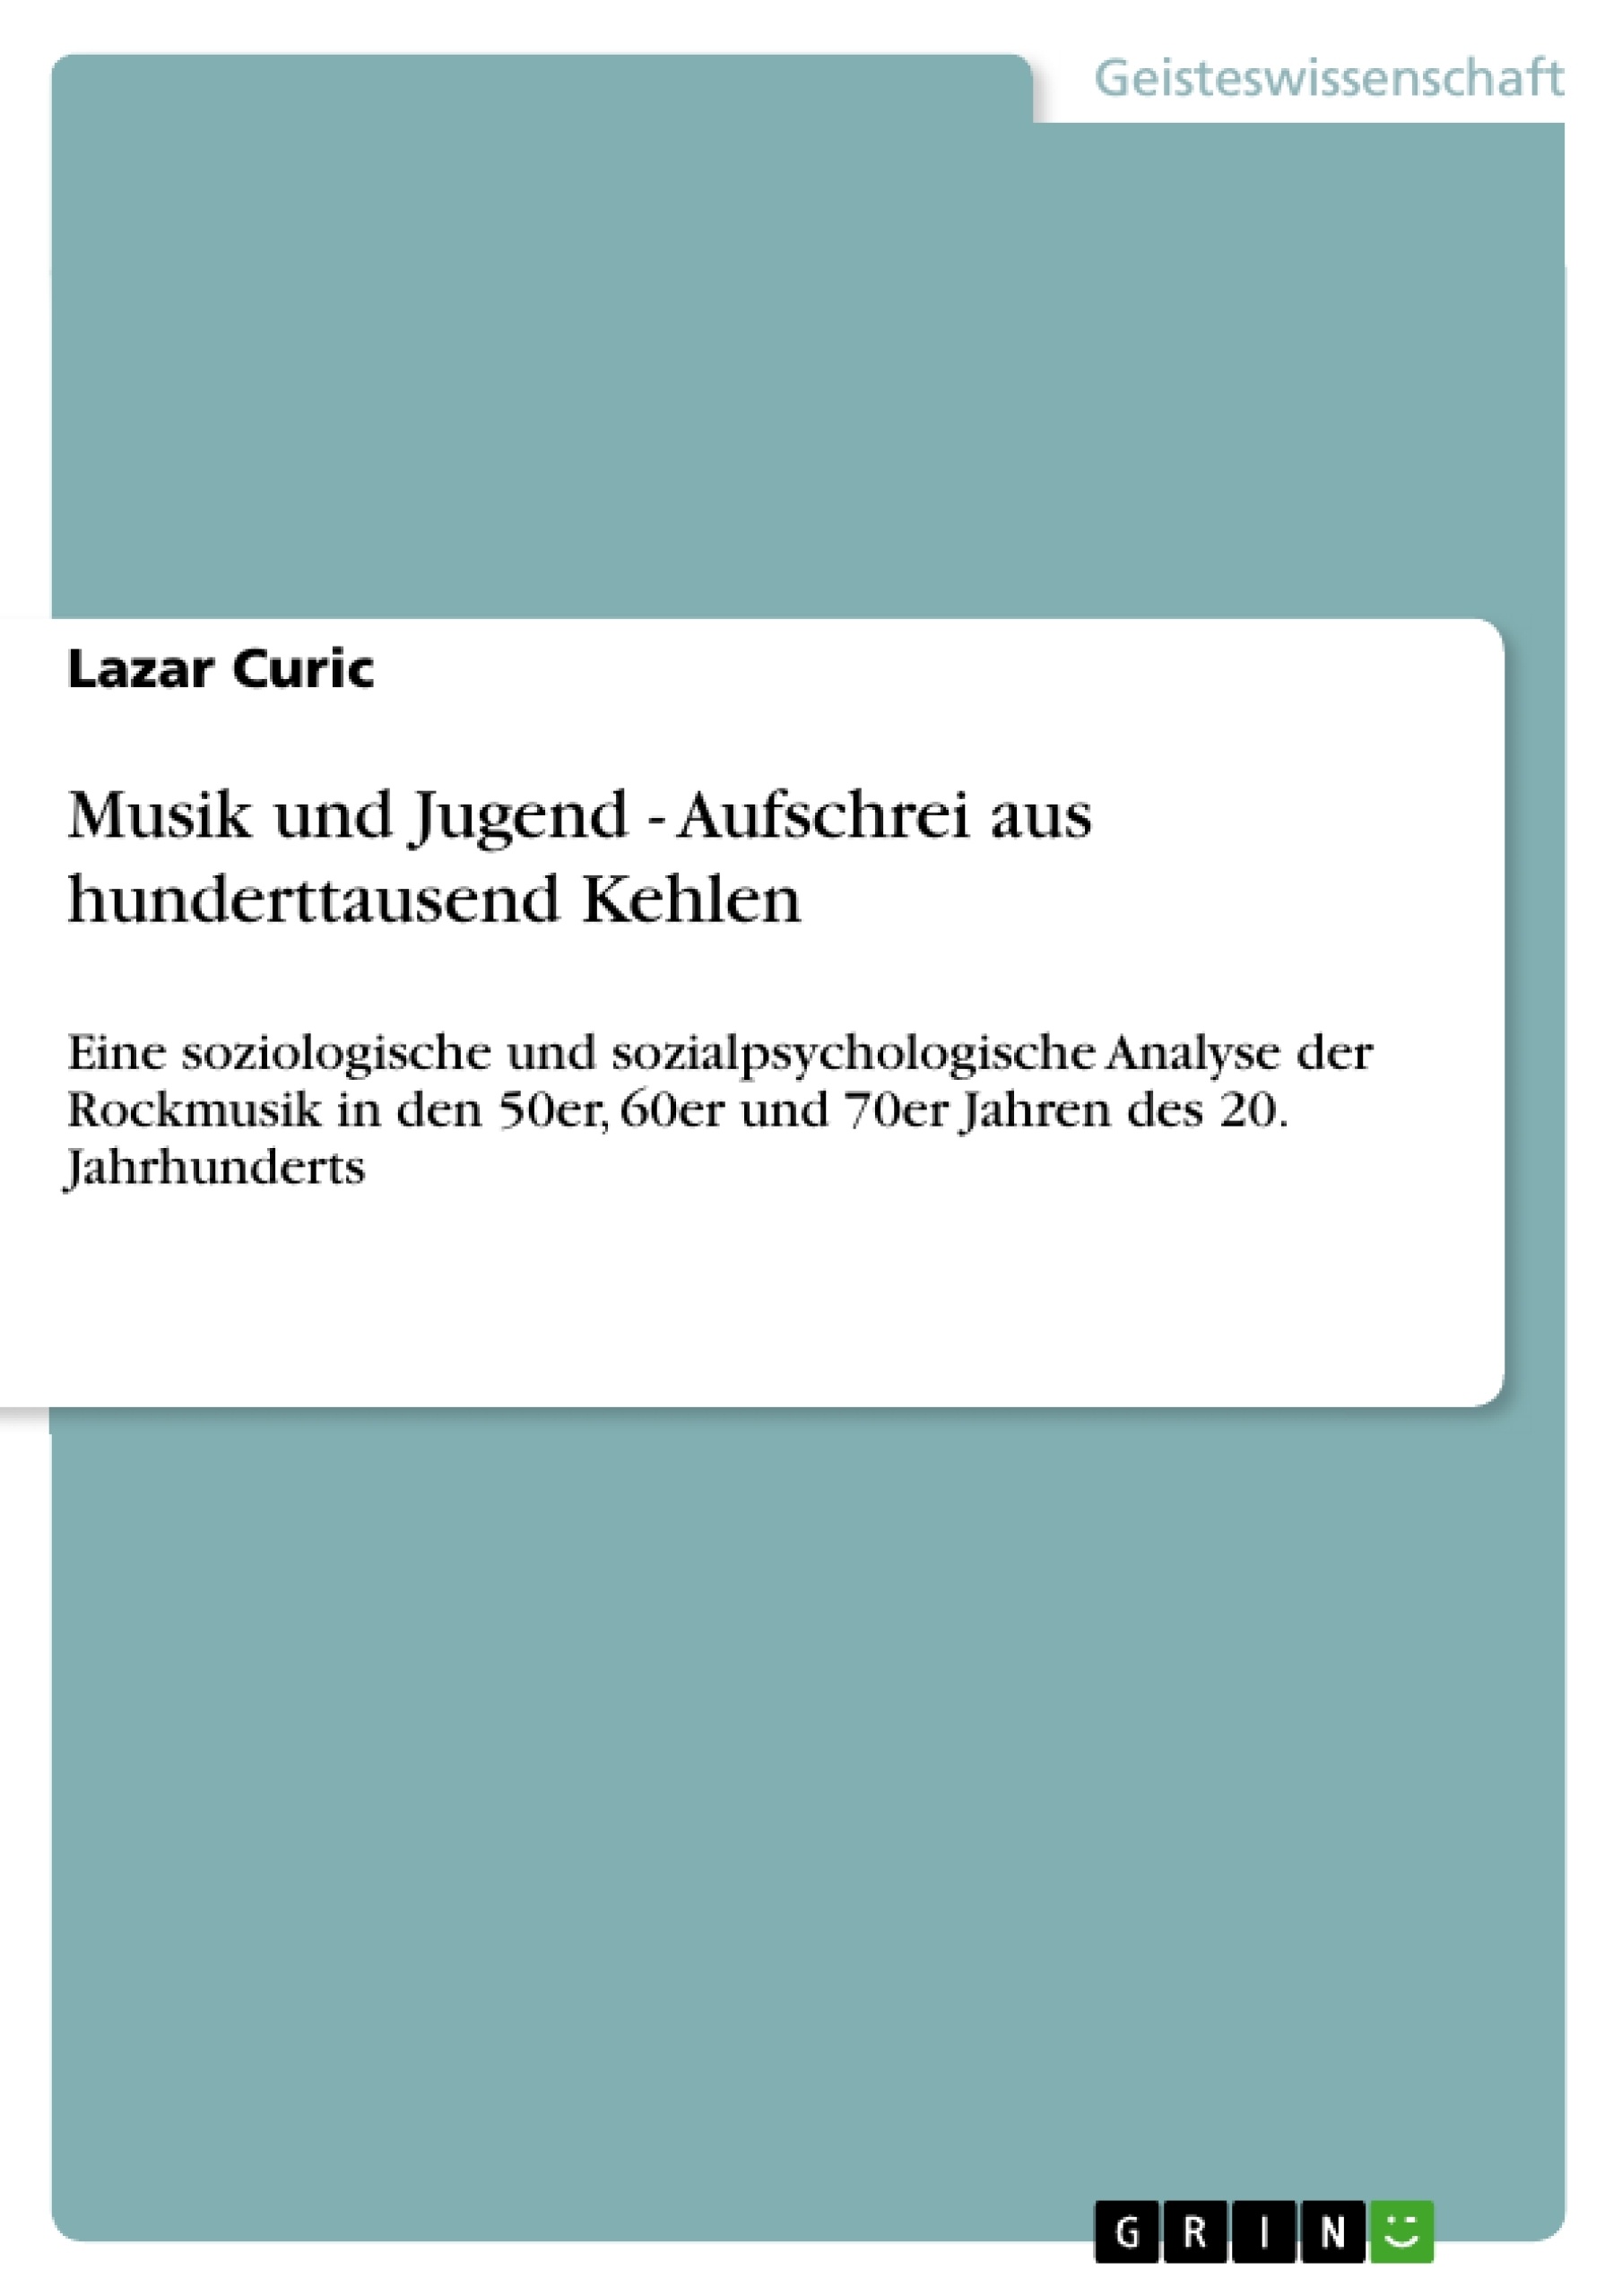 Titre: Musik und Jugend - Aufschrei aus hunderttausend Kehlen